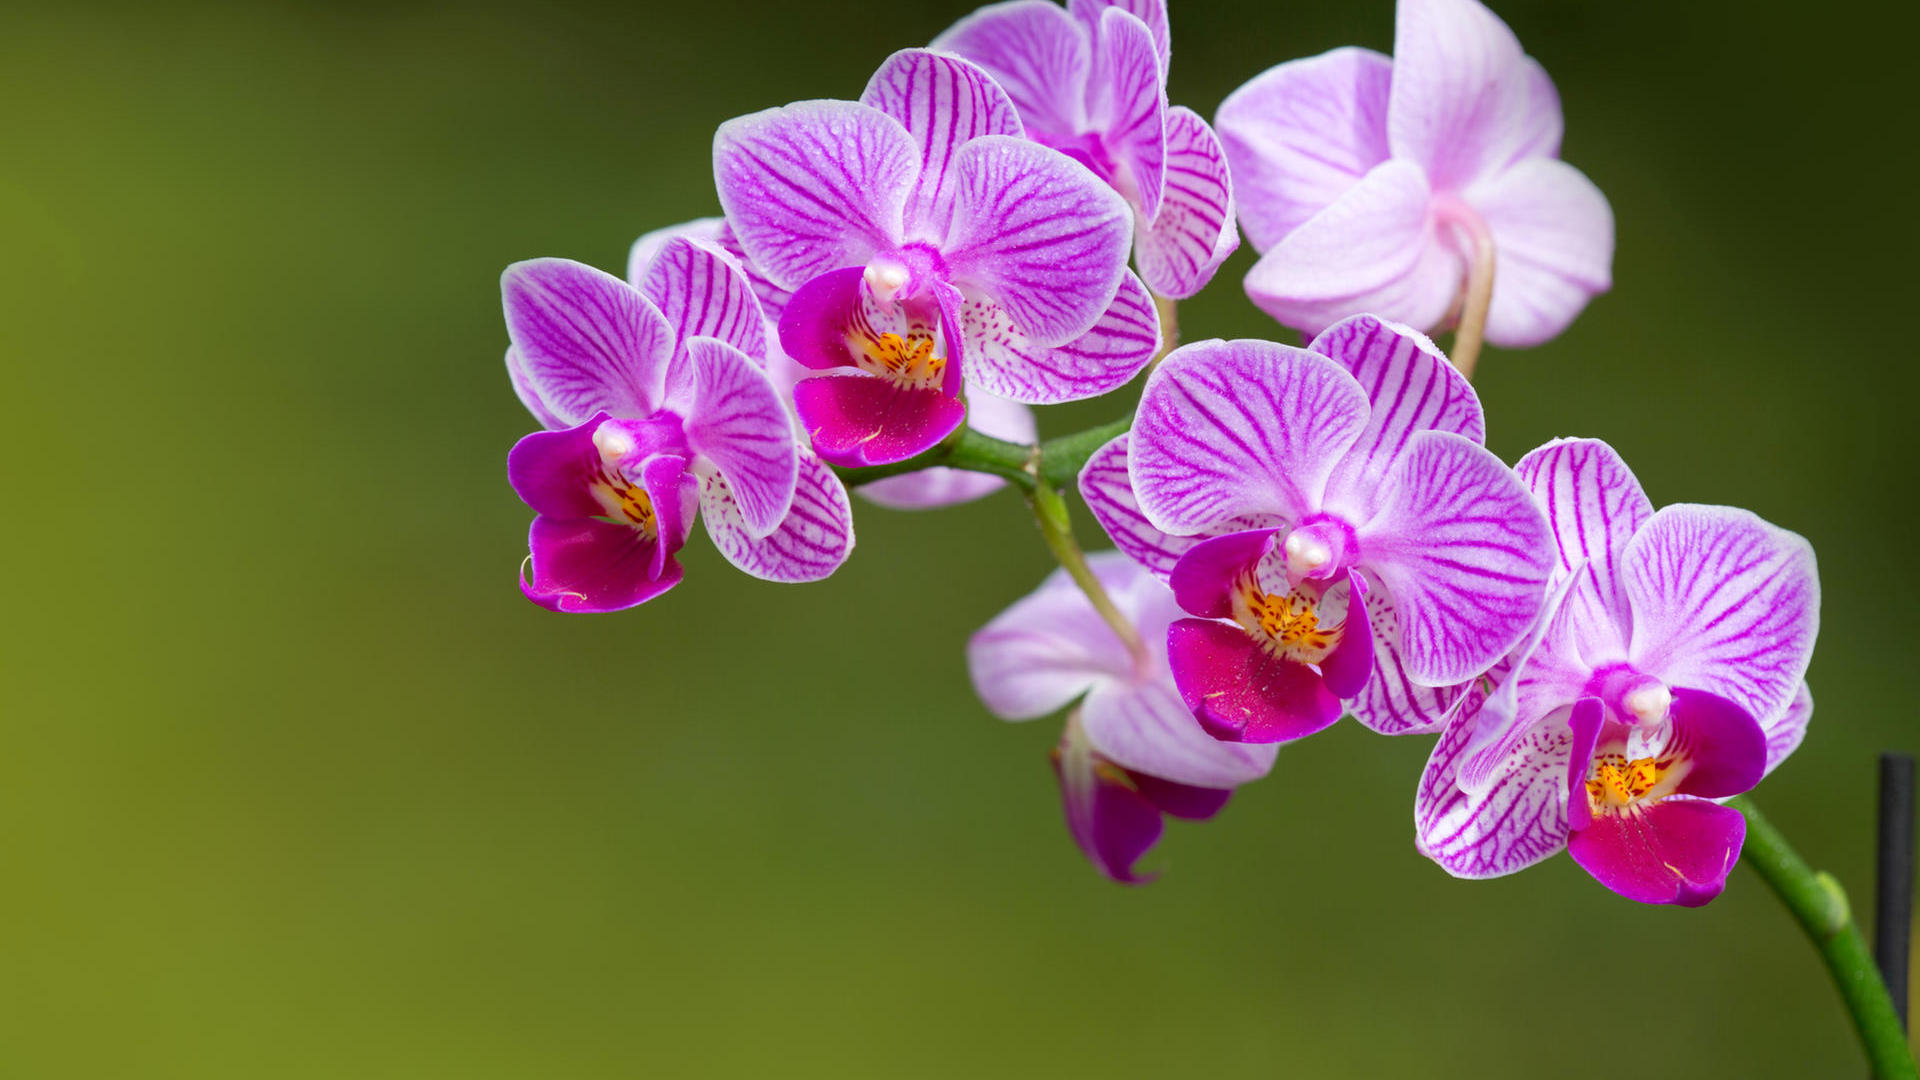 Meyer Orchideen